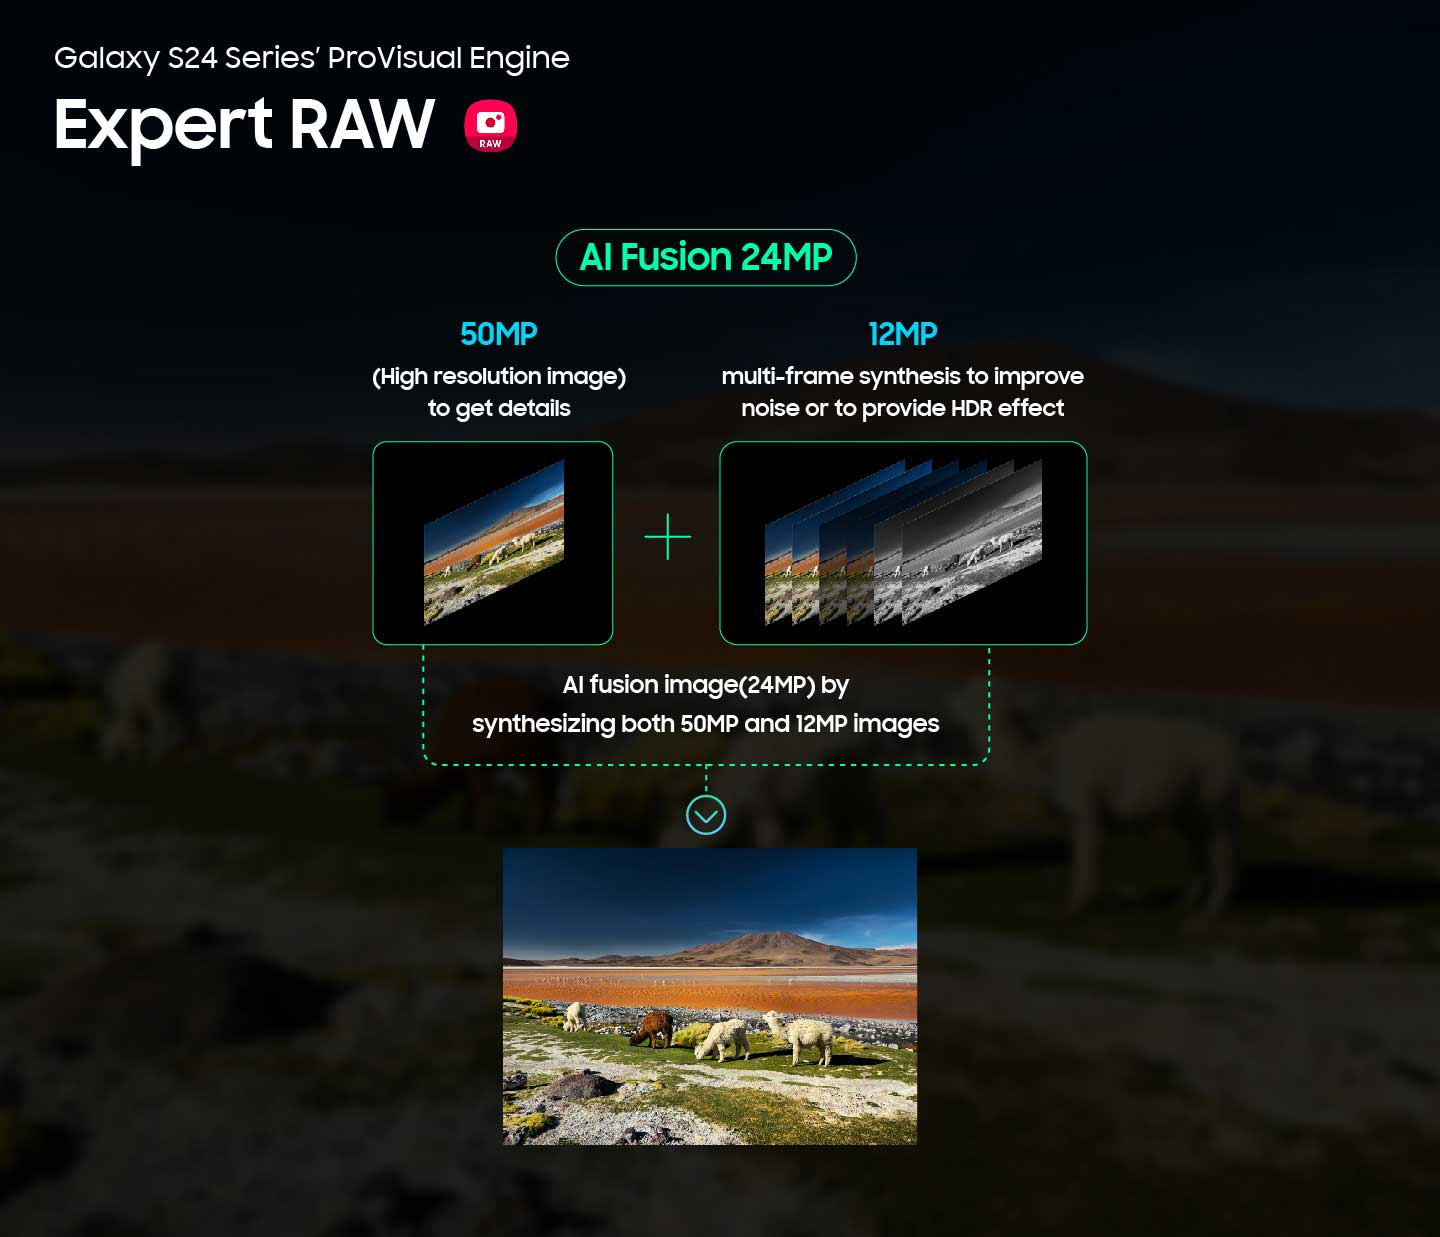 Samsung Provisualengine Capture Perfect Shot Expert Raw